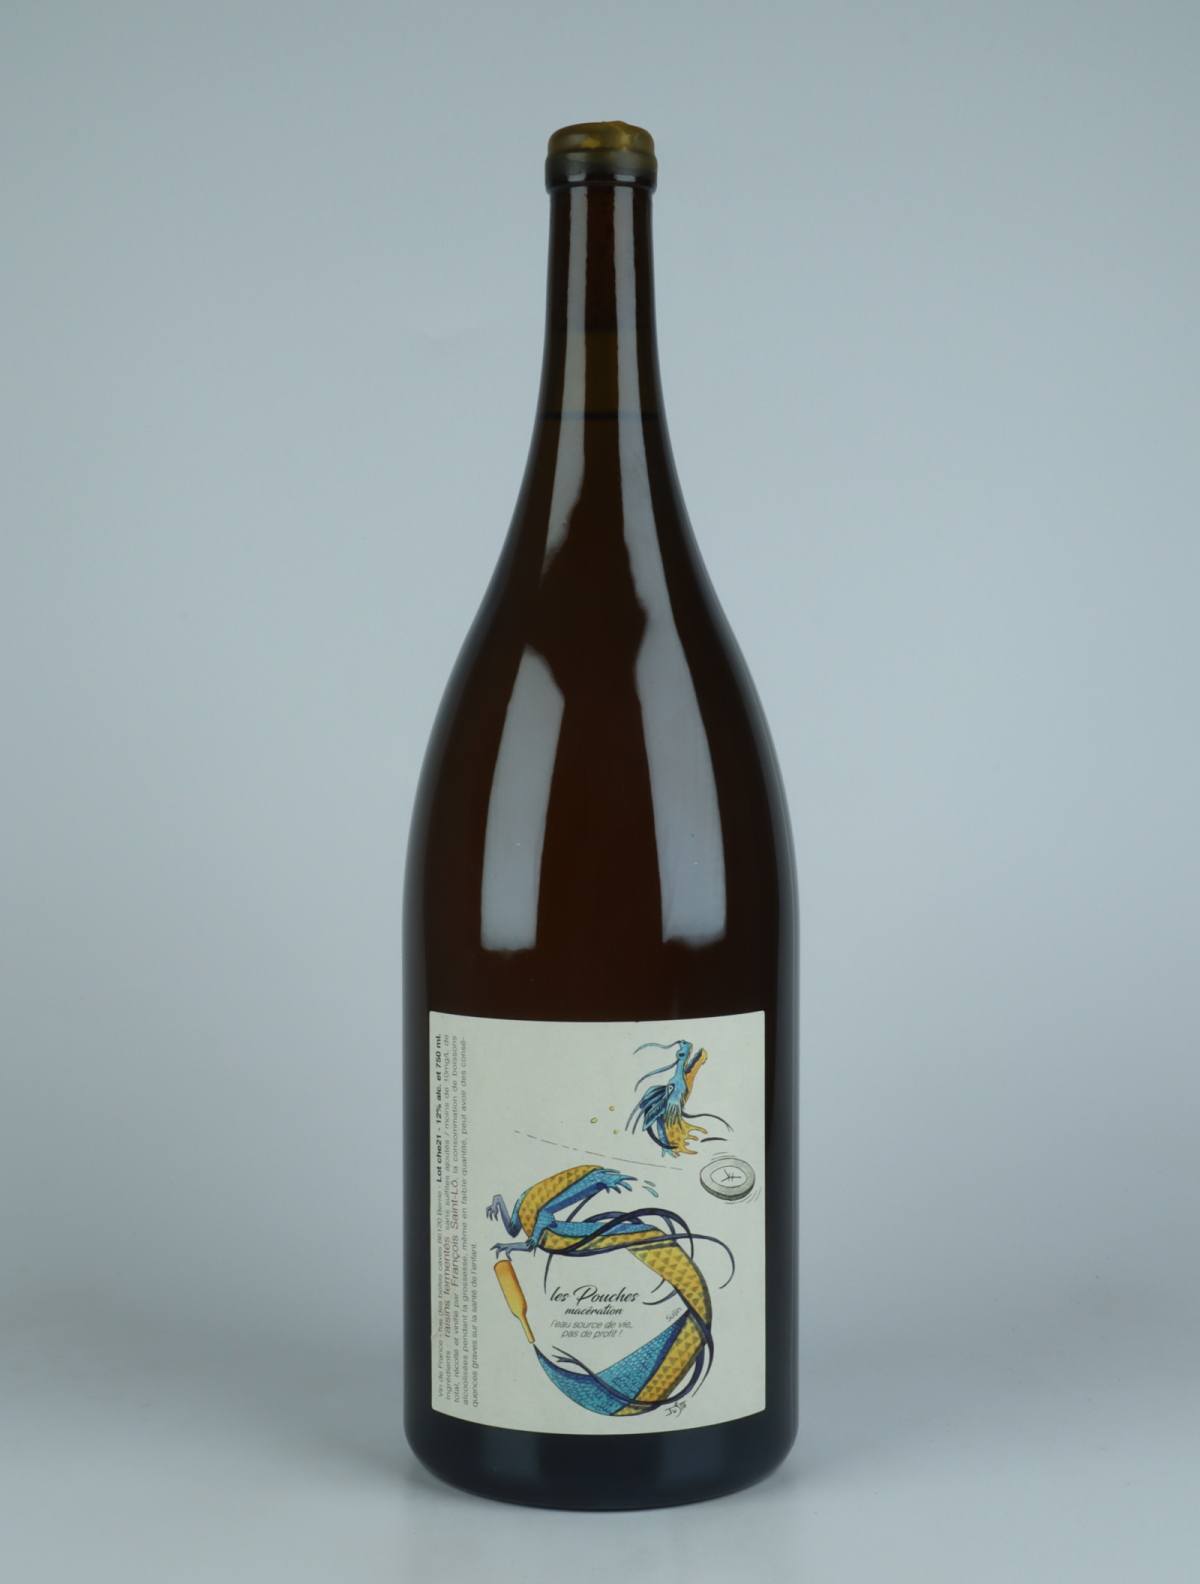 A bottle 2021 Les Pouches Macération - Magnum Orange wine from François Saint-Lô, Loire in France